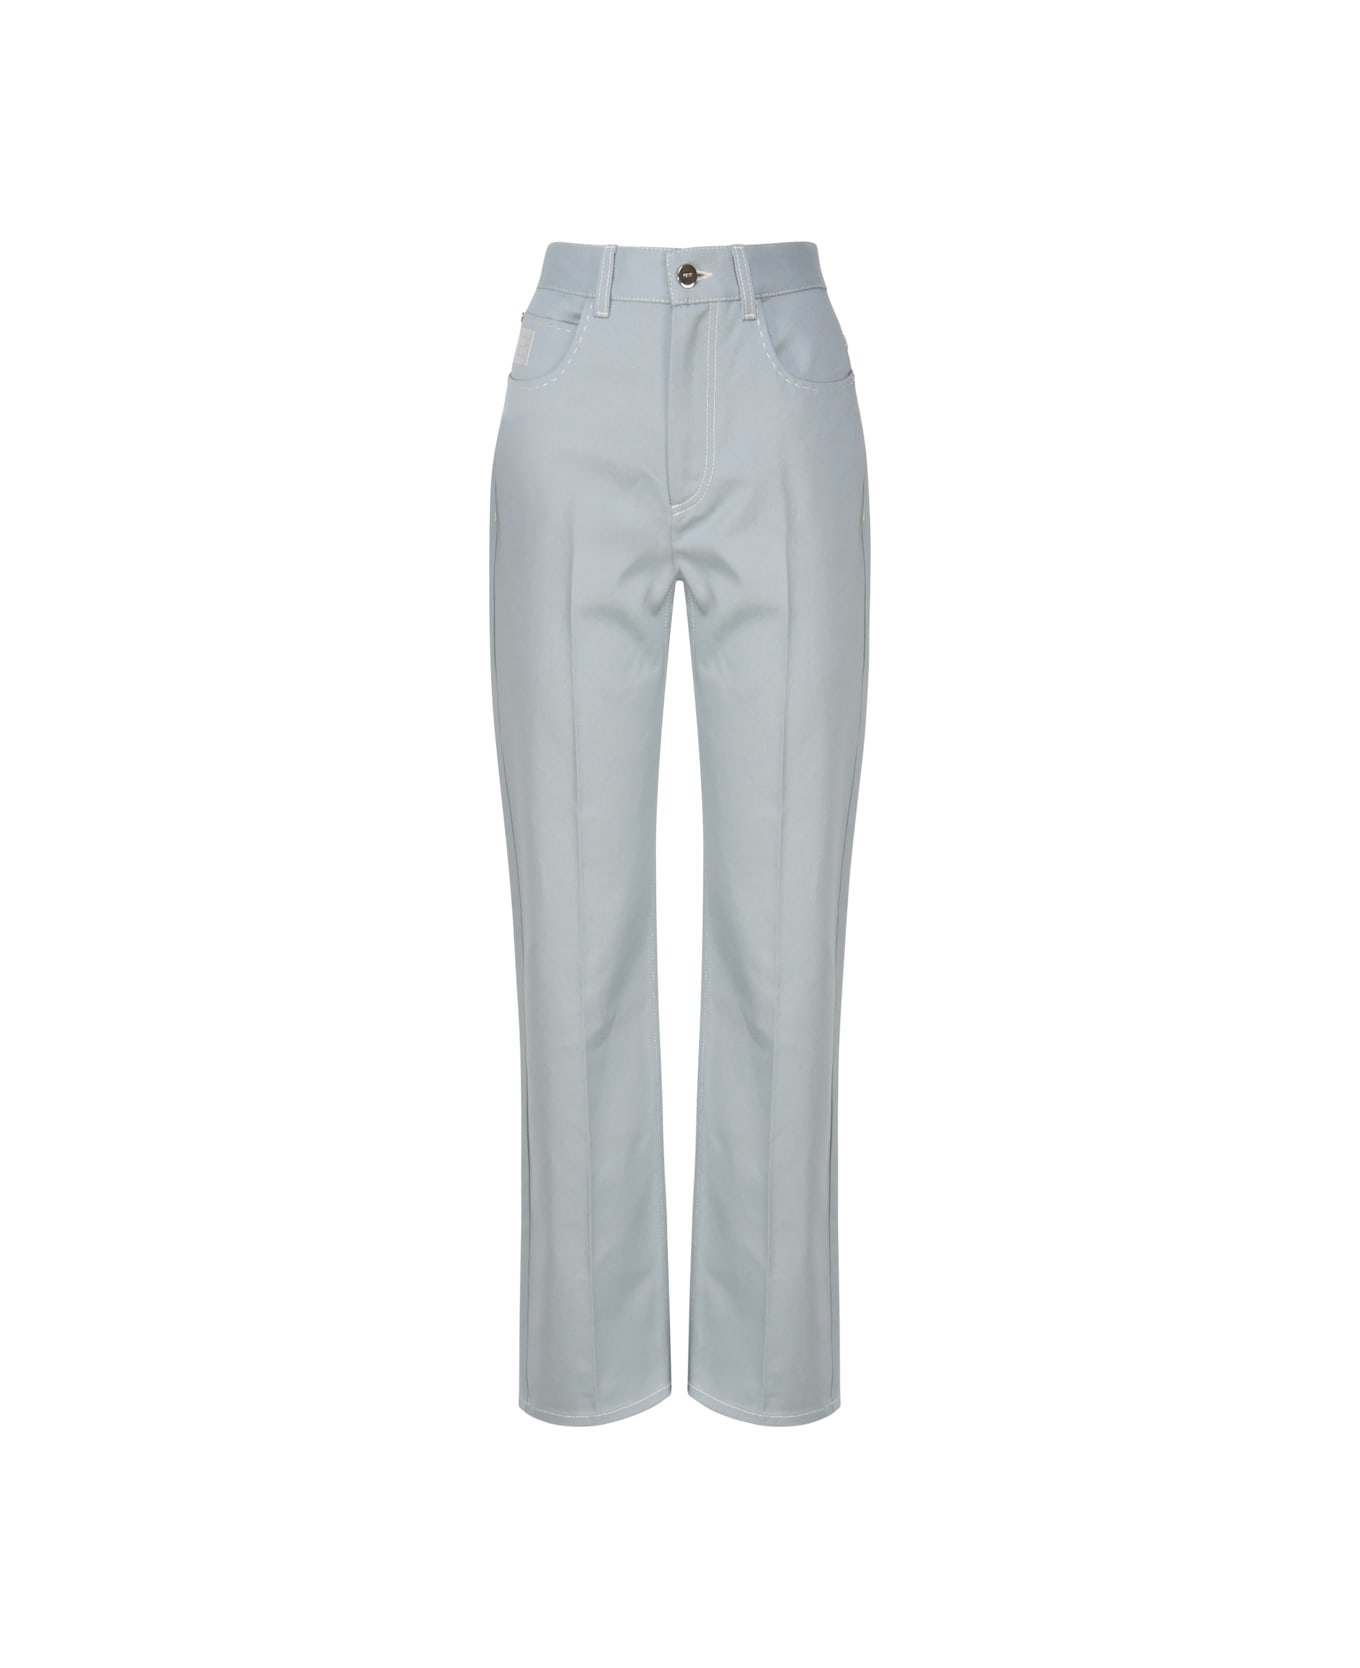 Fendi Cotton Denim Trousers - Pale blue